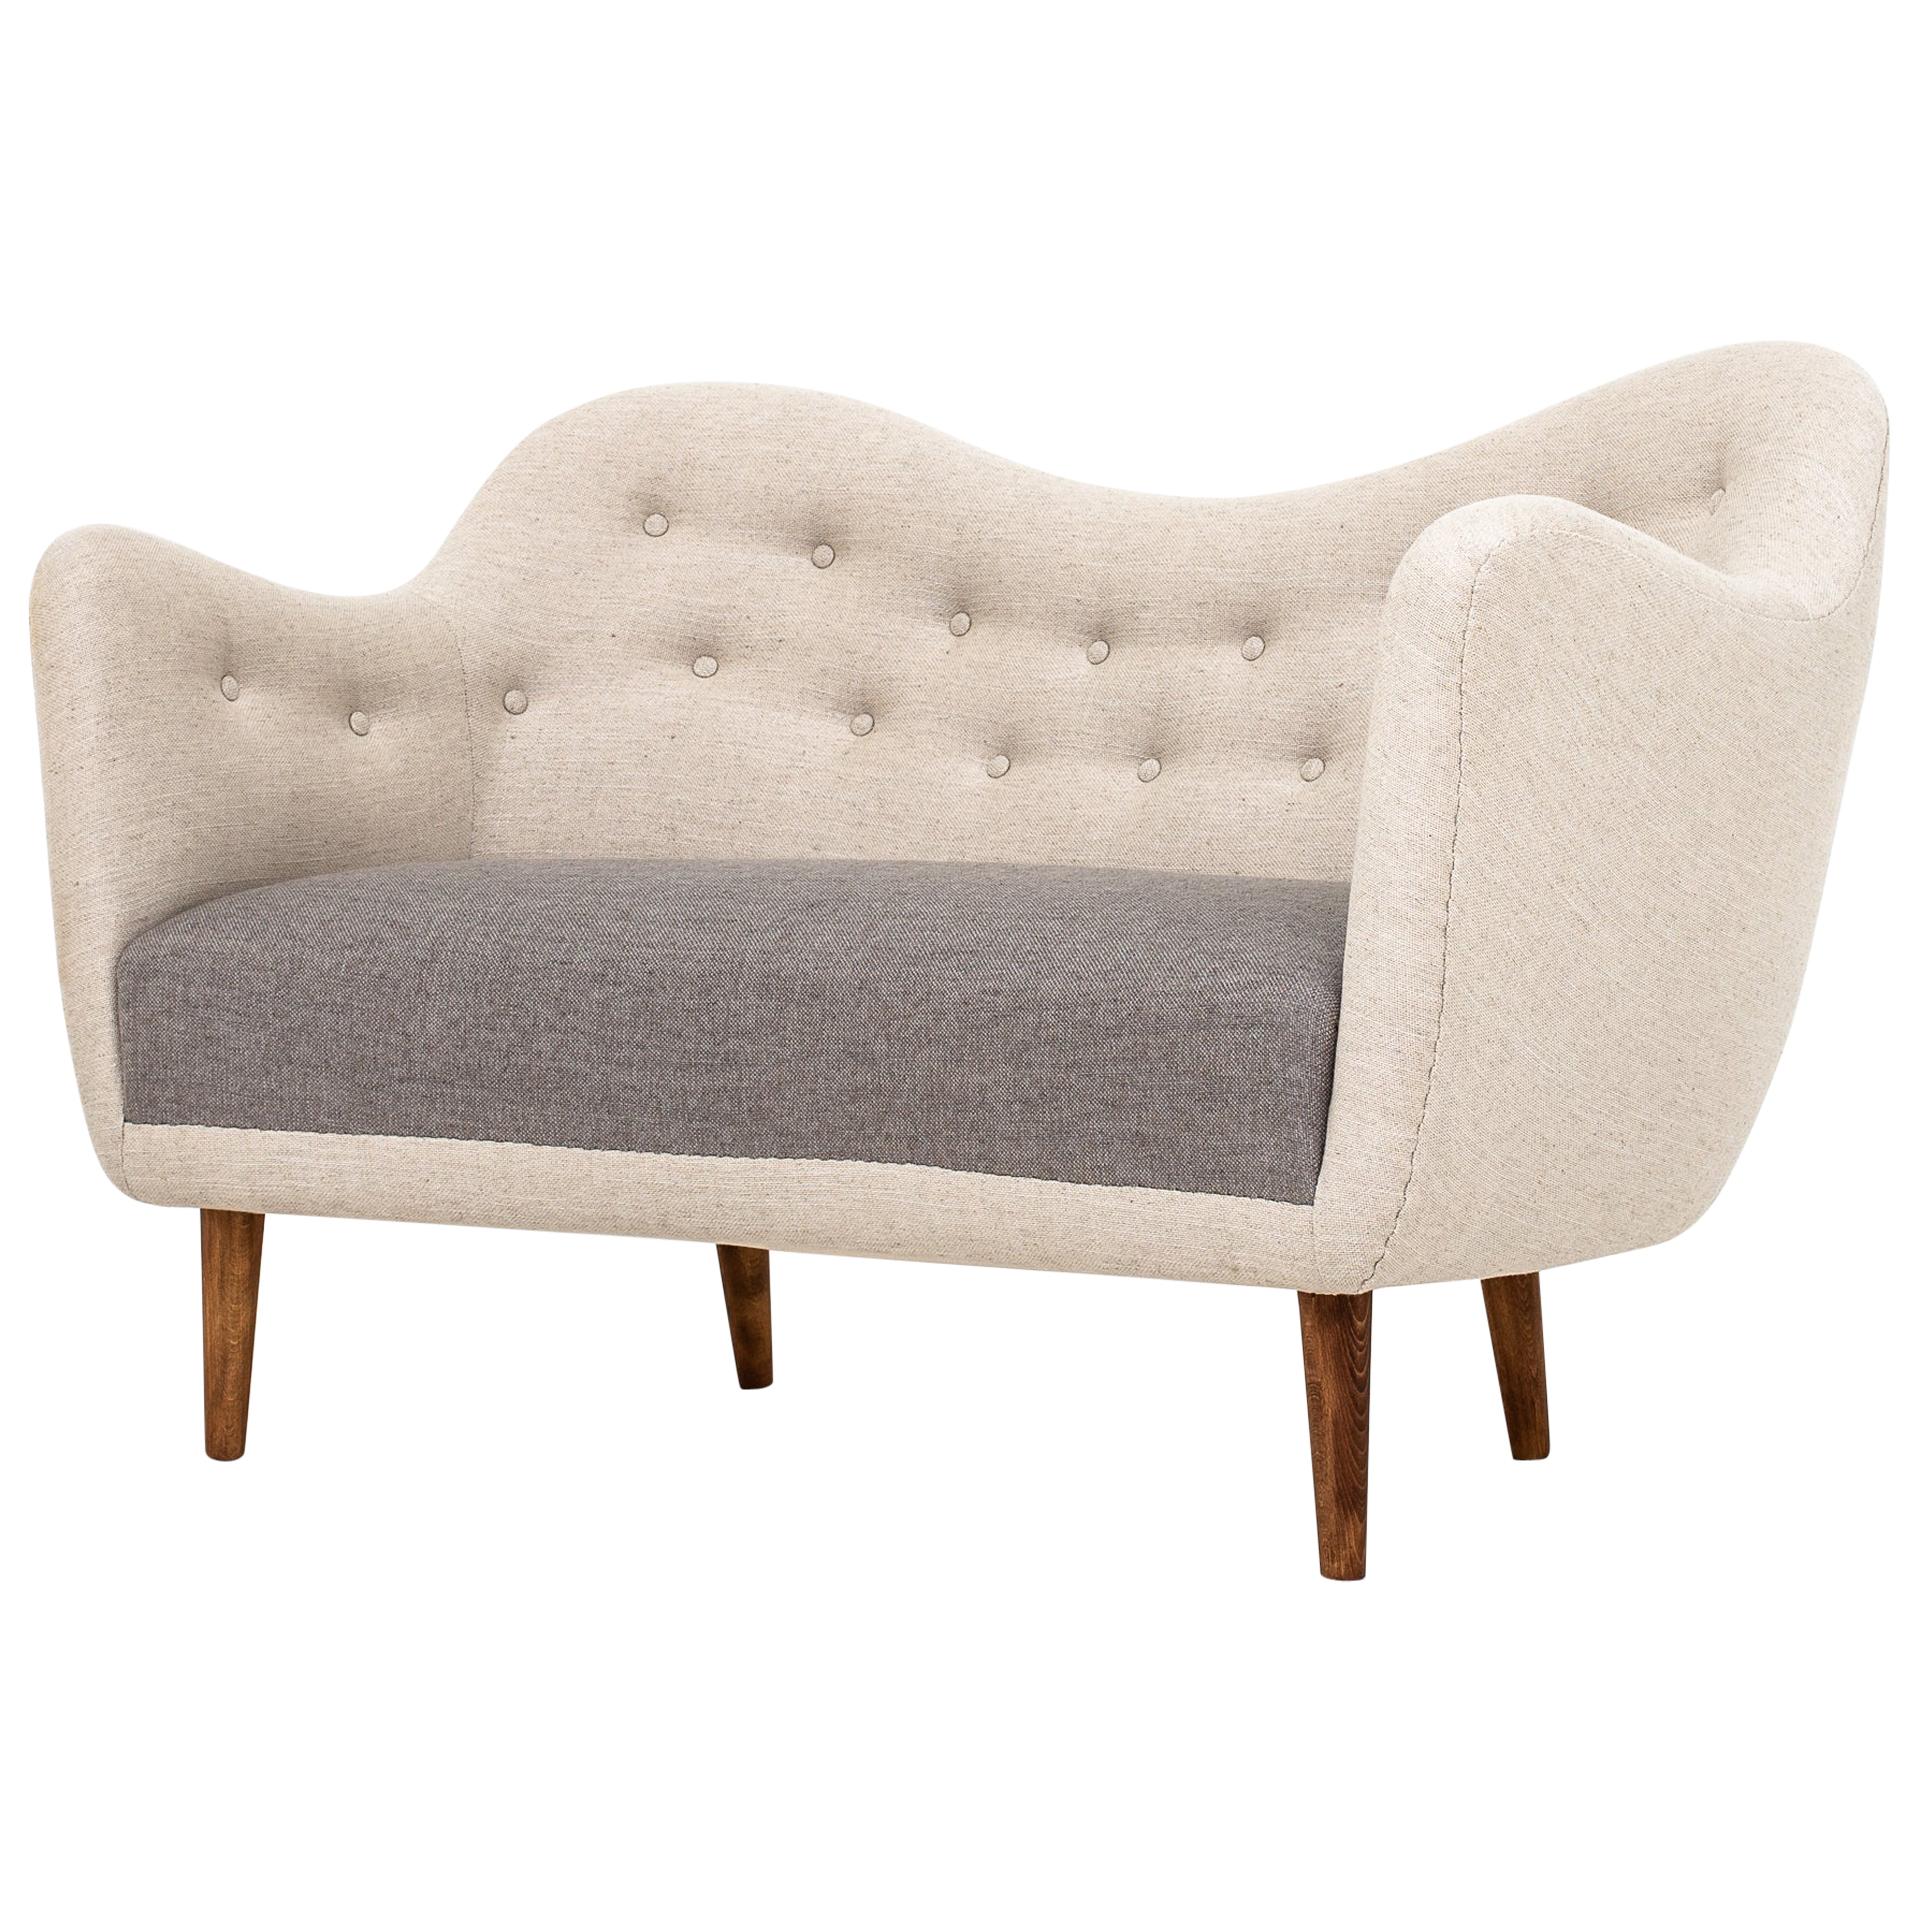 2-Seat Sofa by Finn Juhl